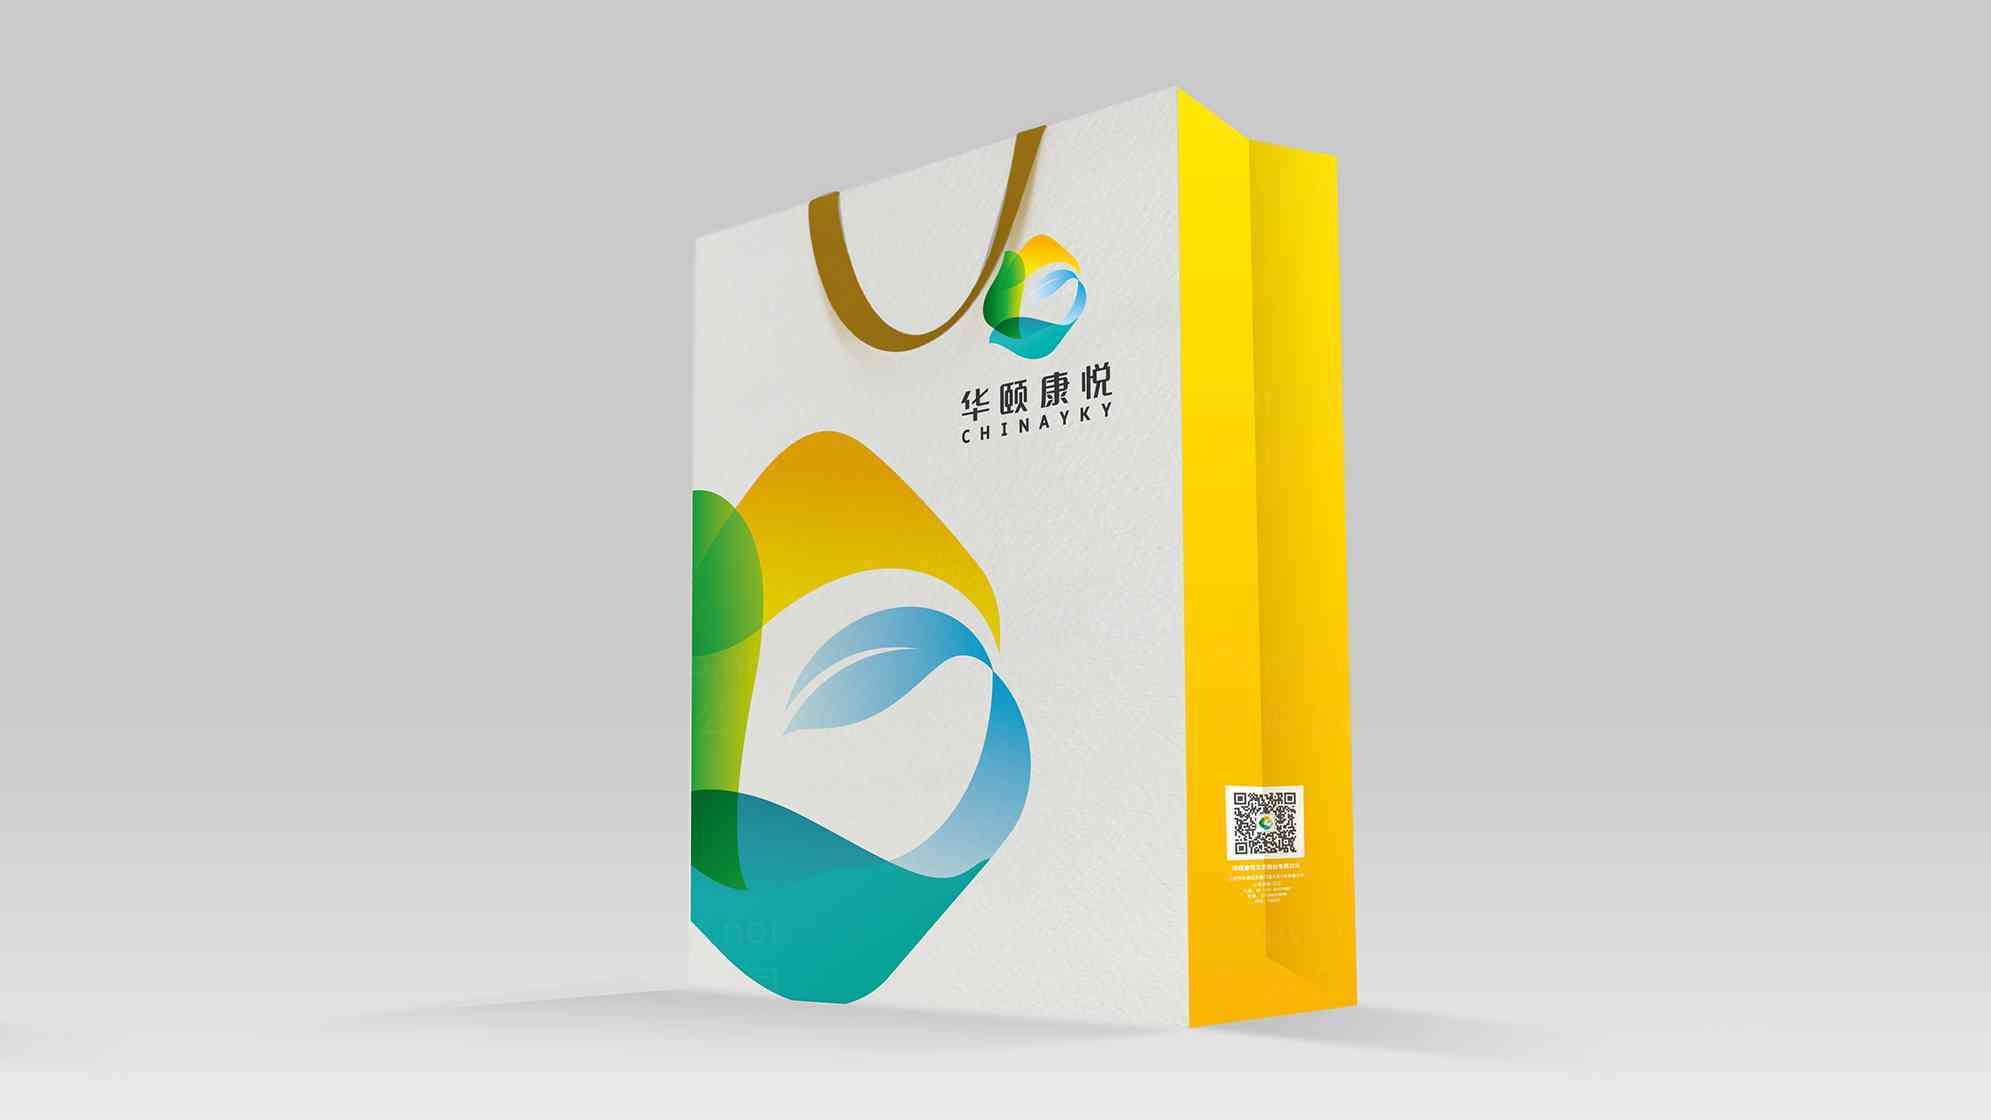 华颐康悦公司logo设计图片素材